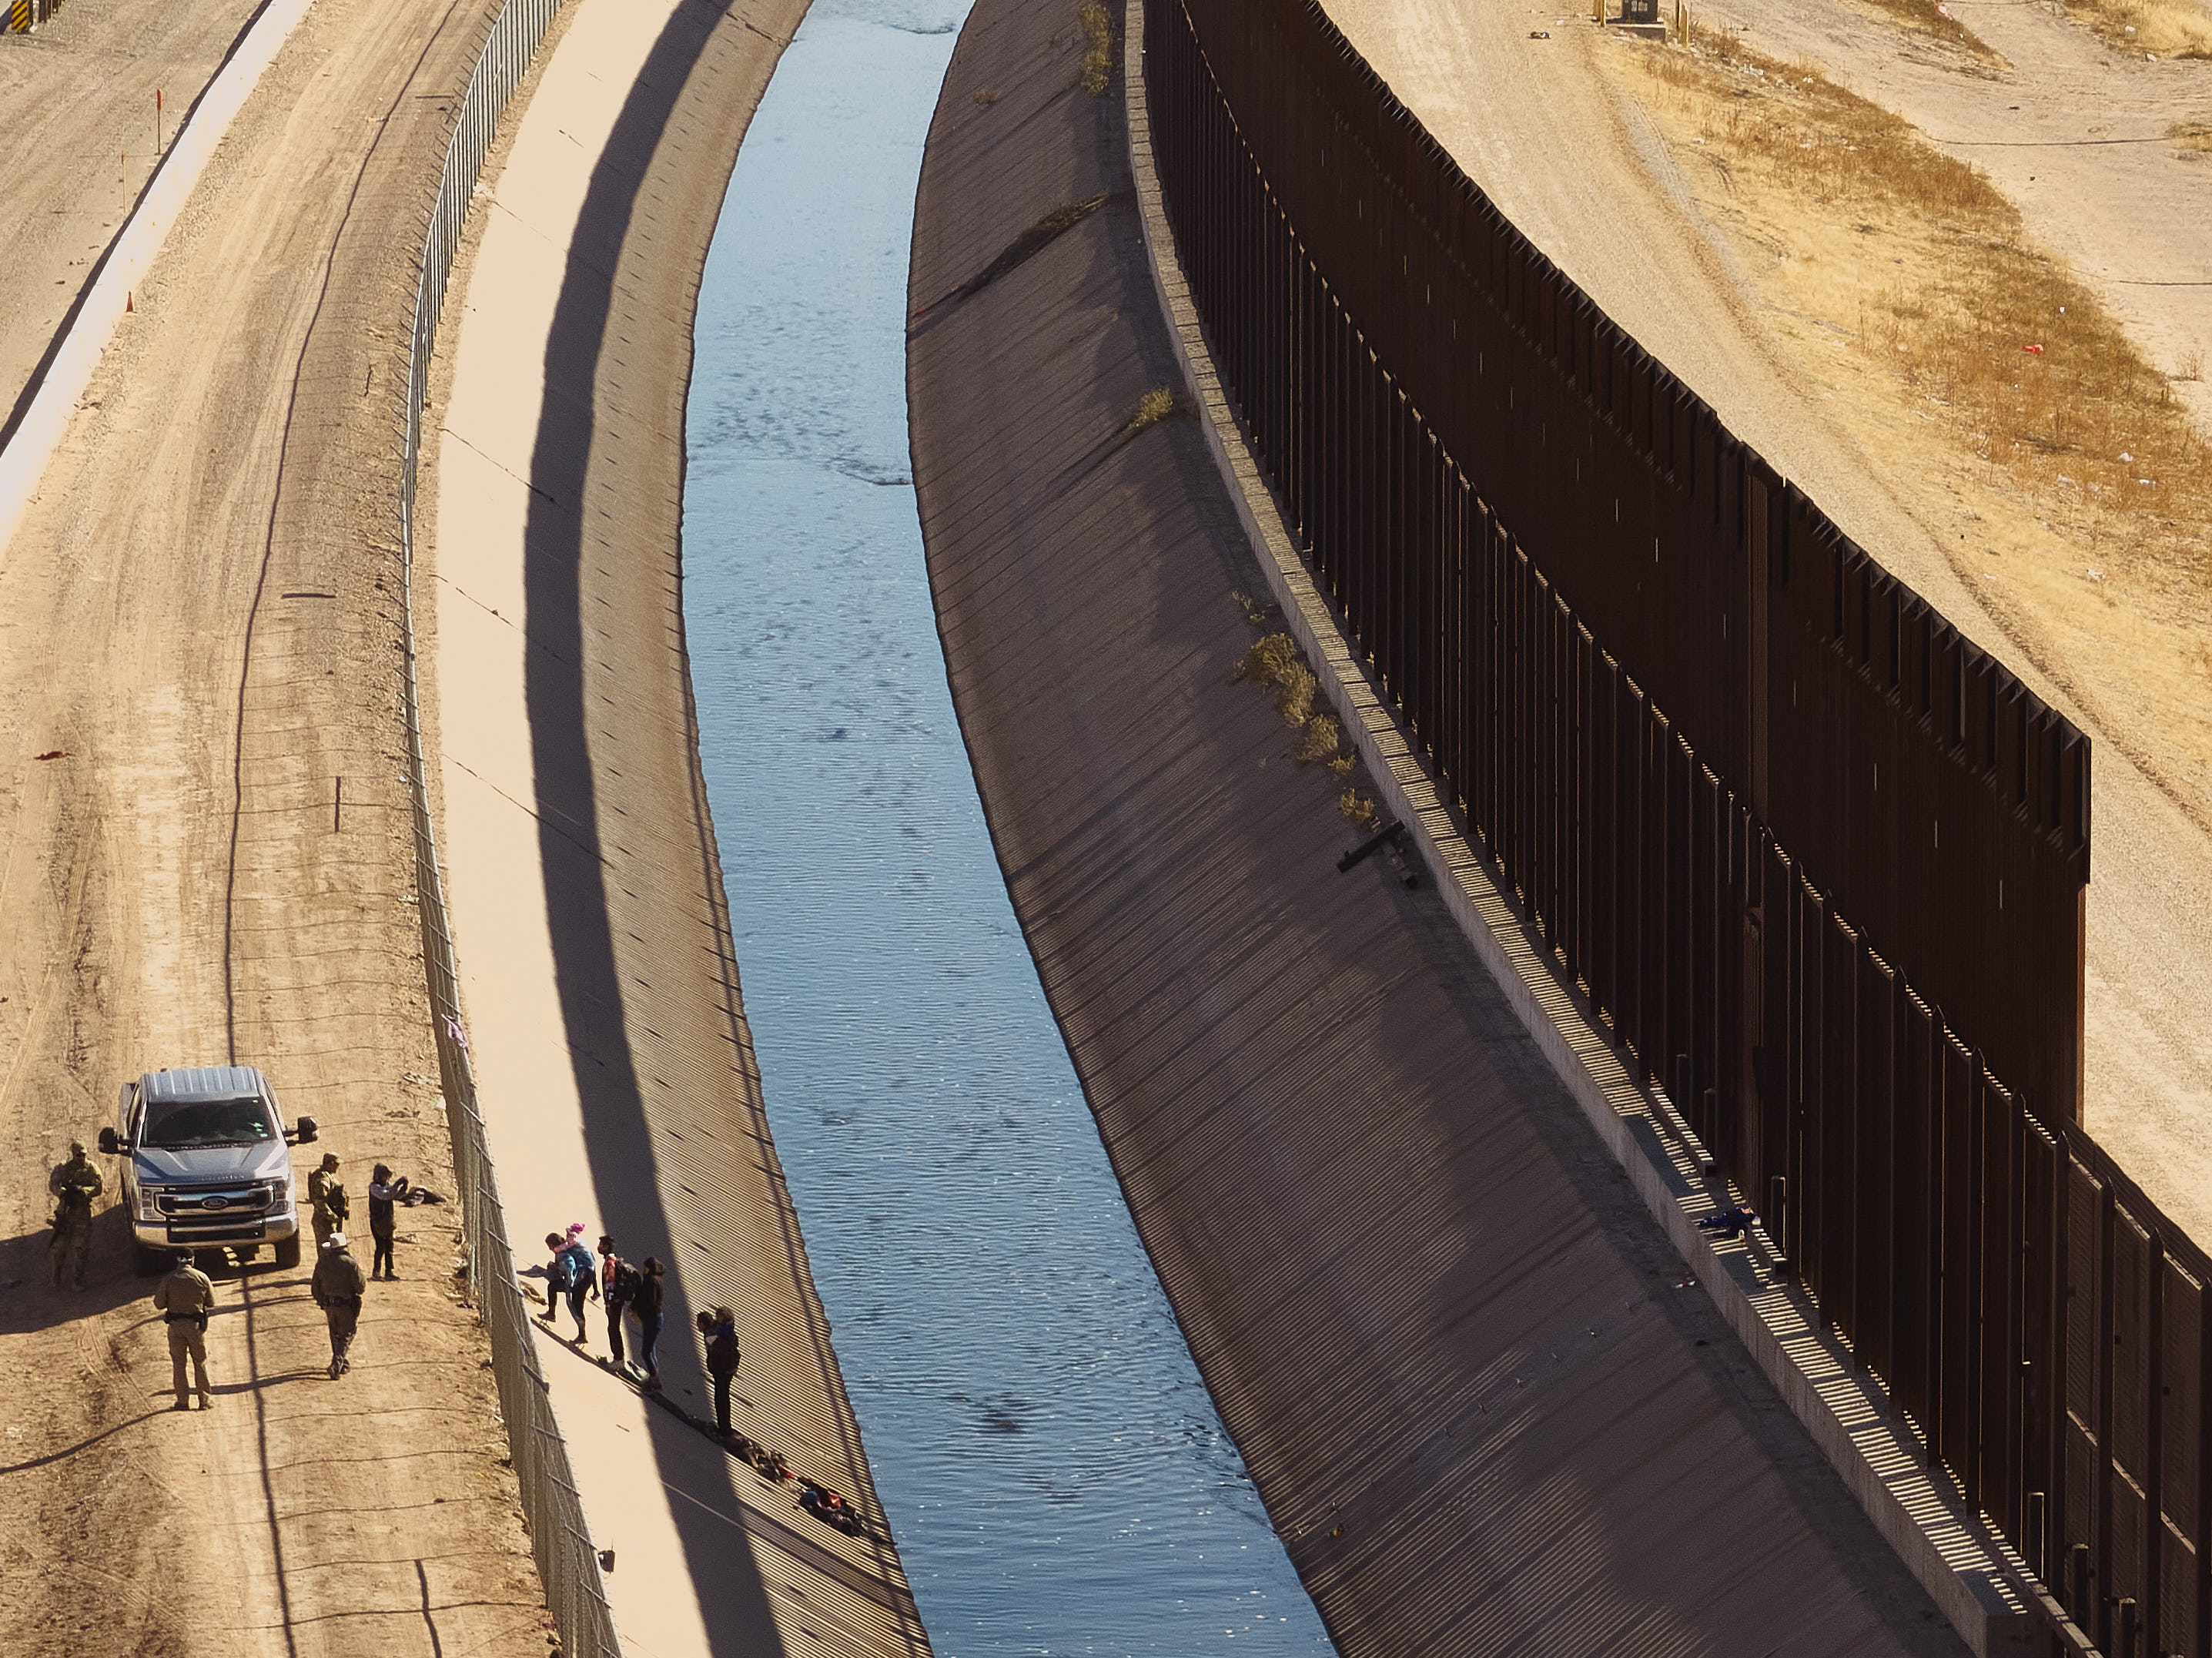 Migrants cross U.S.-Mexico Border Wall